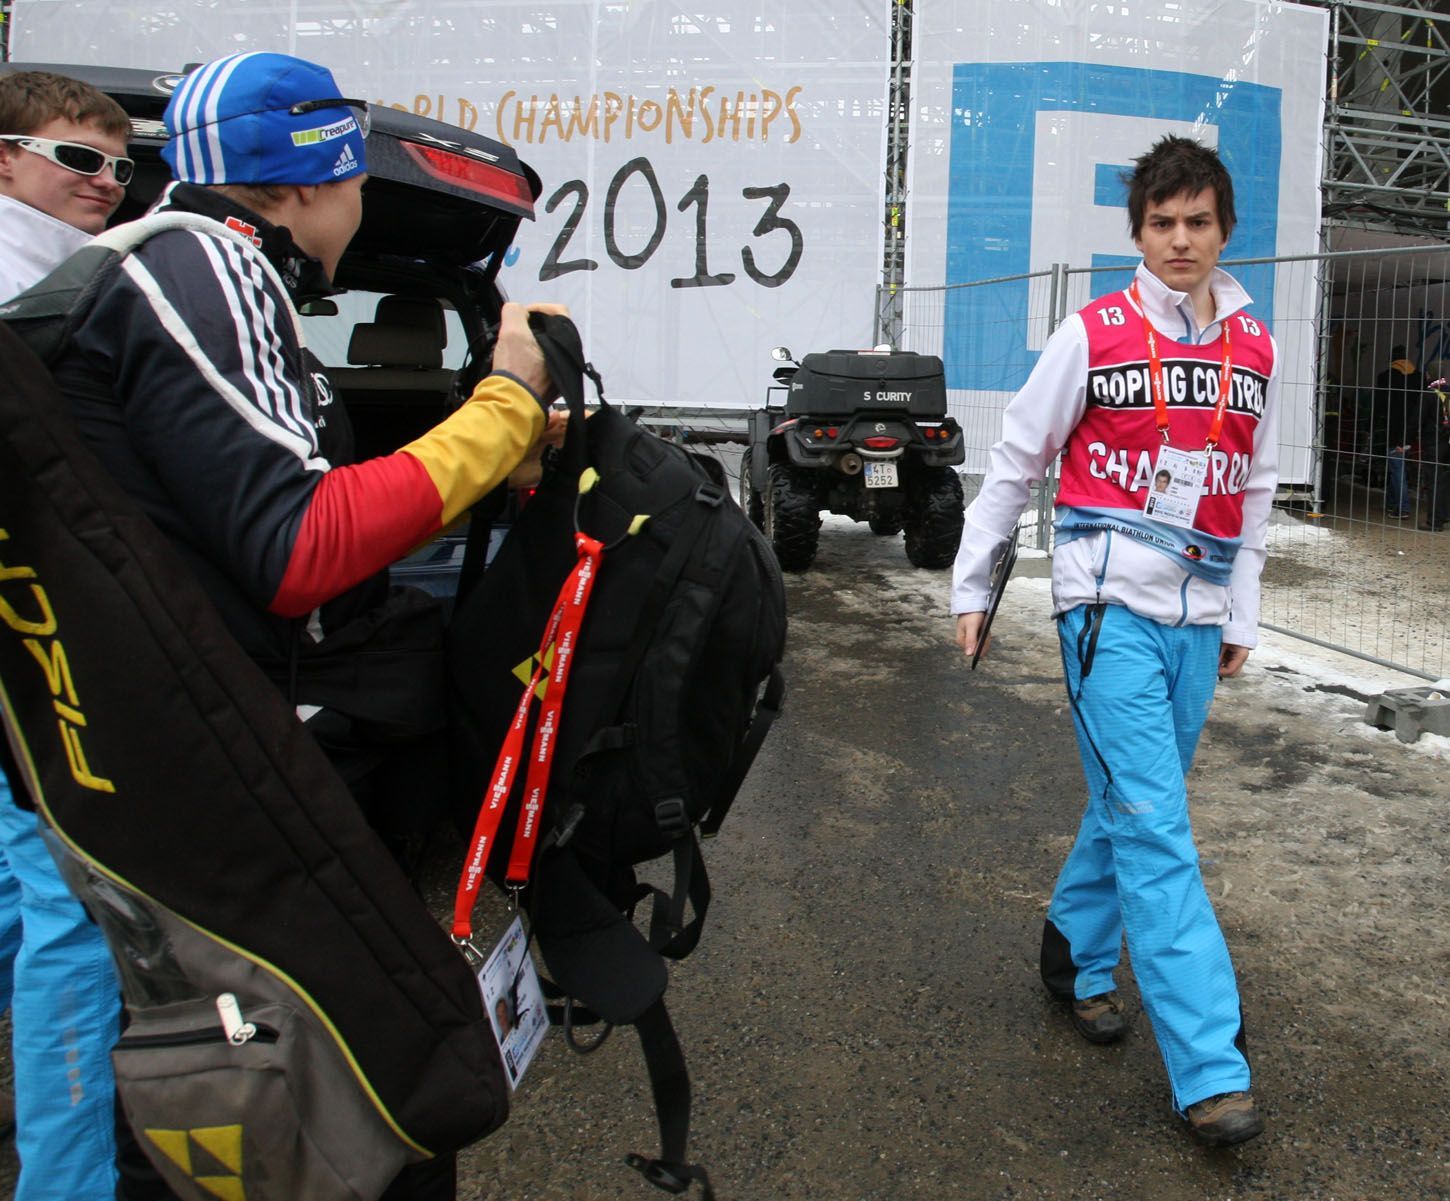 Němec Andreas Birnbacher míří na dopingovou kontrolu na MS v biatlonu v Novém Městě na Moravě 2013